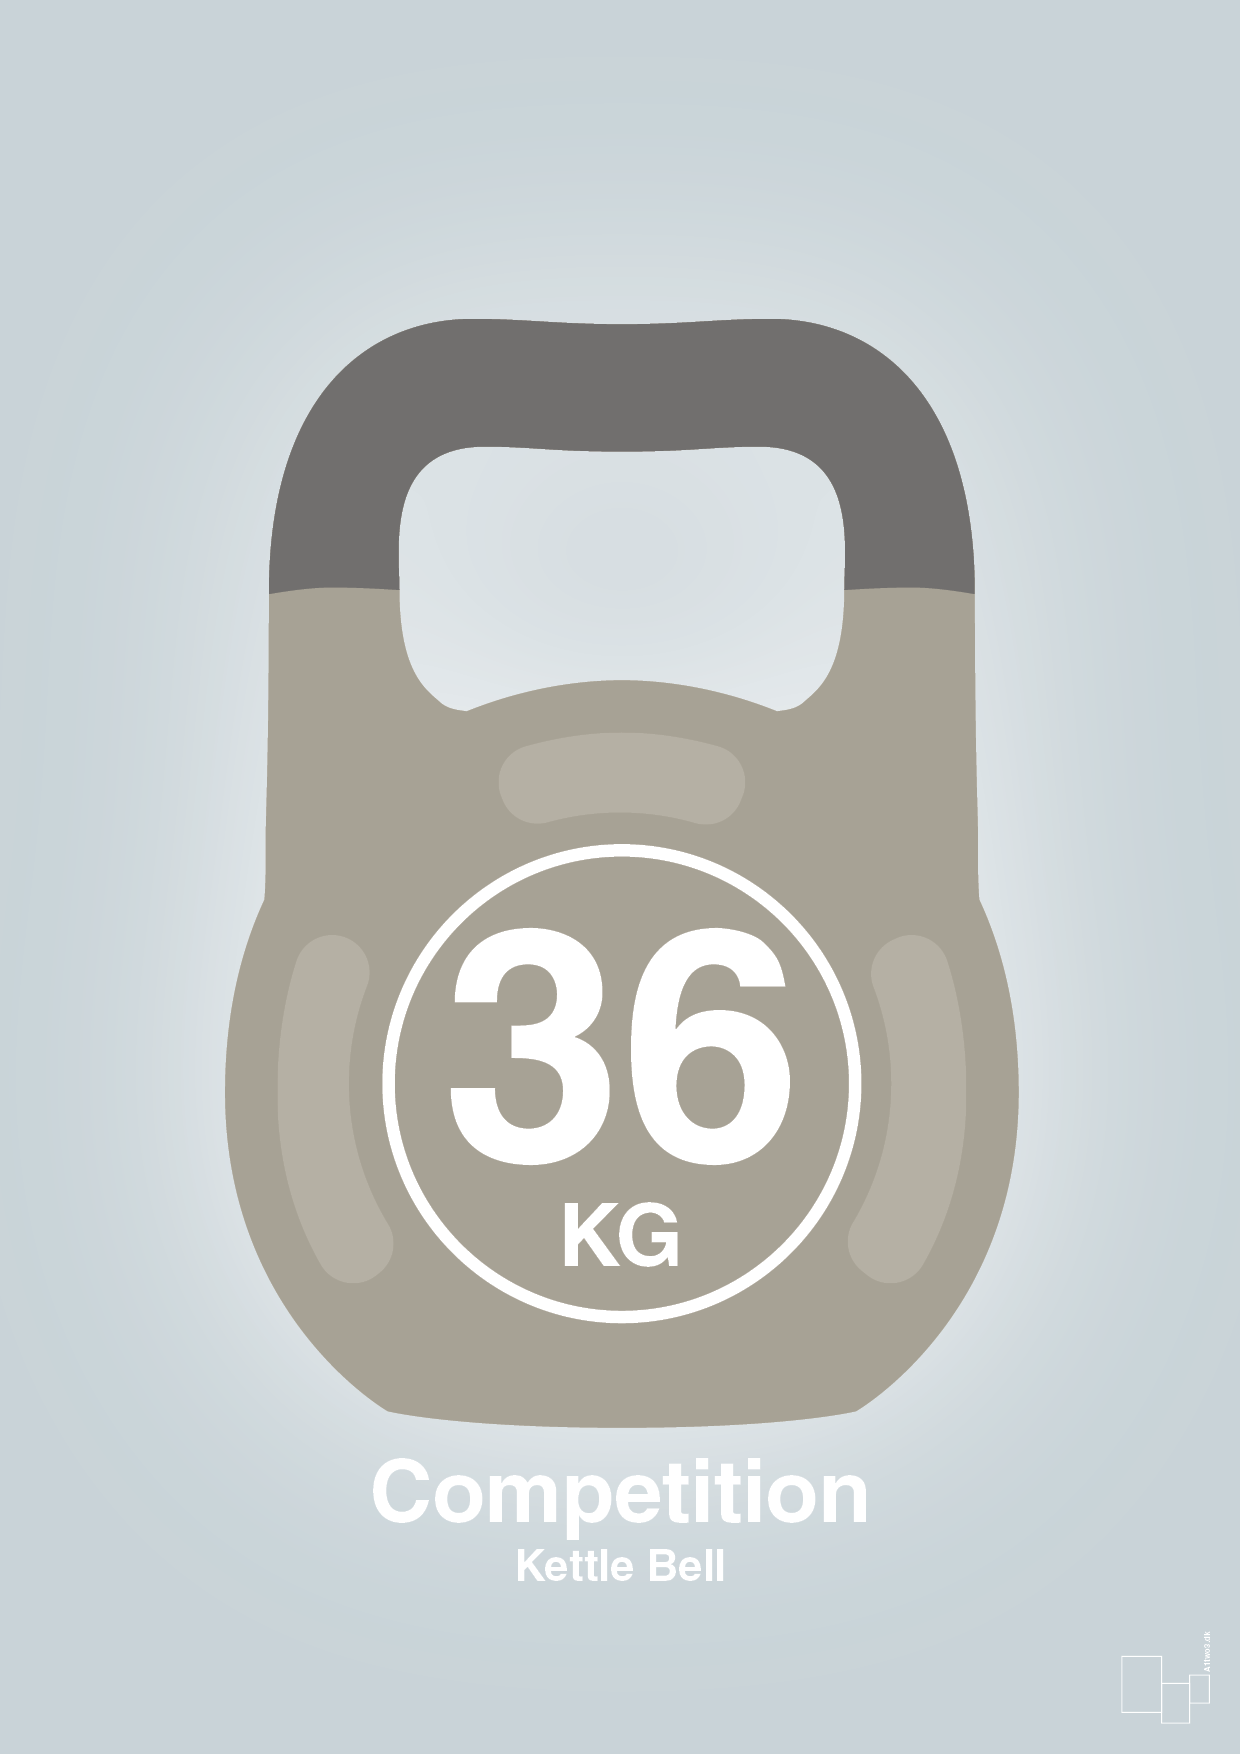 kettle bell 36 kg - competition color - Plakat med Grafik i Light Drizzle